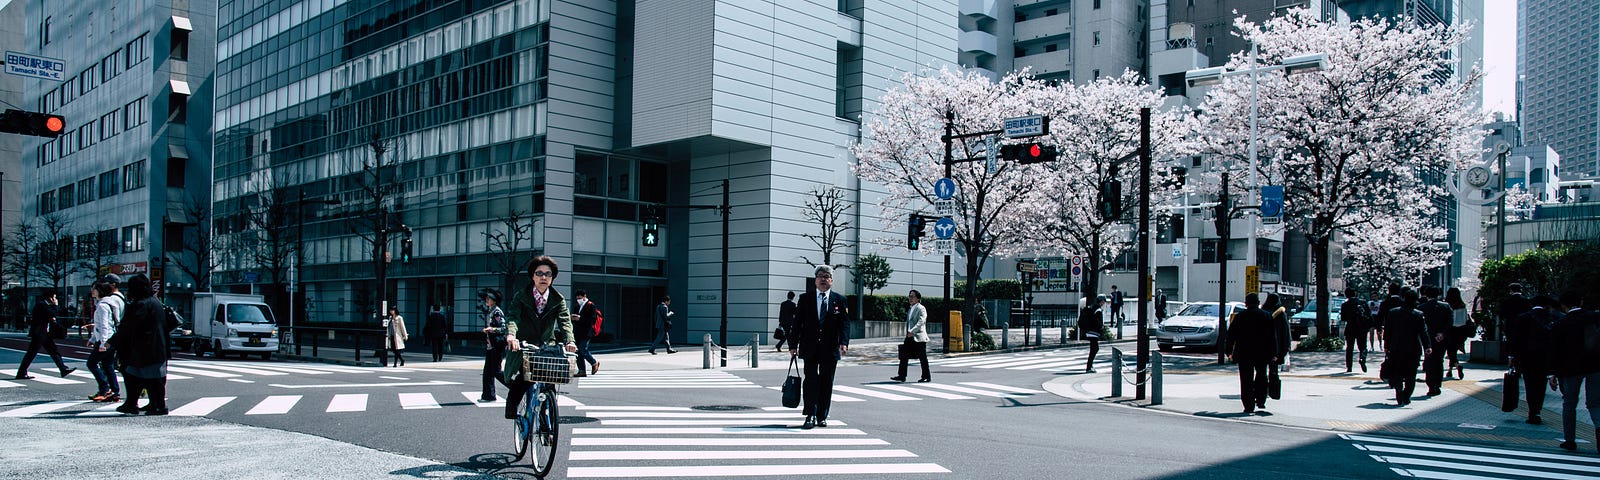 People crossing at a pedestrian crossing in Japan.